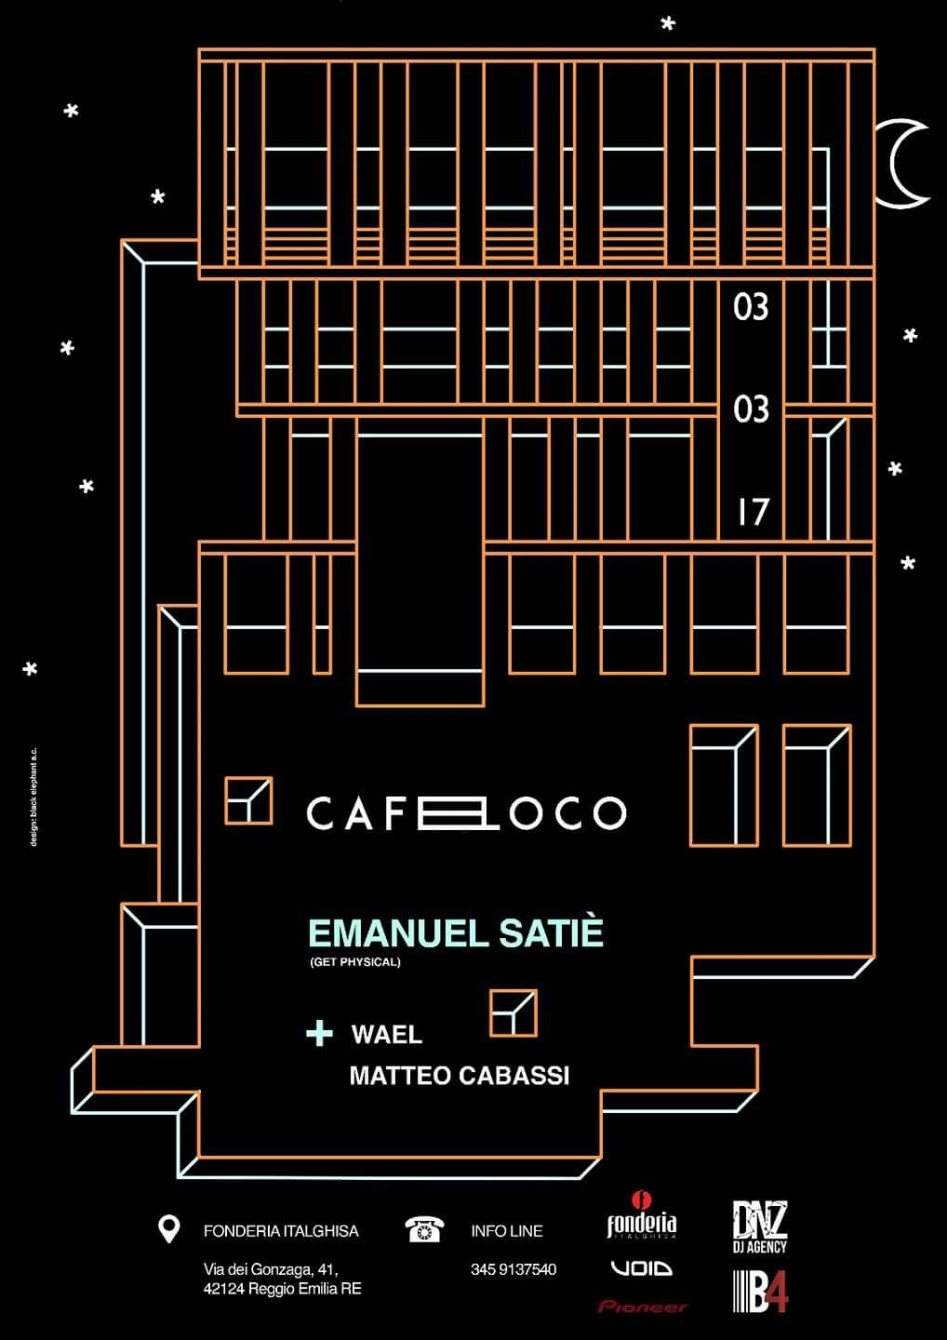 Cafe Loco with Emanuel Satie, Matteo Cabassi & Wael - Página frontal